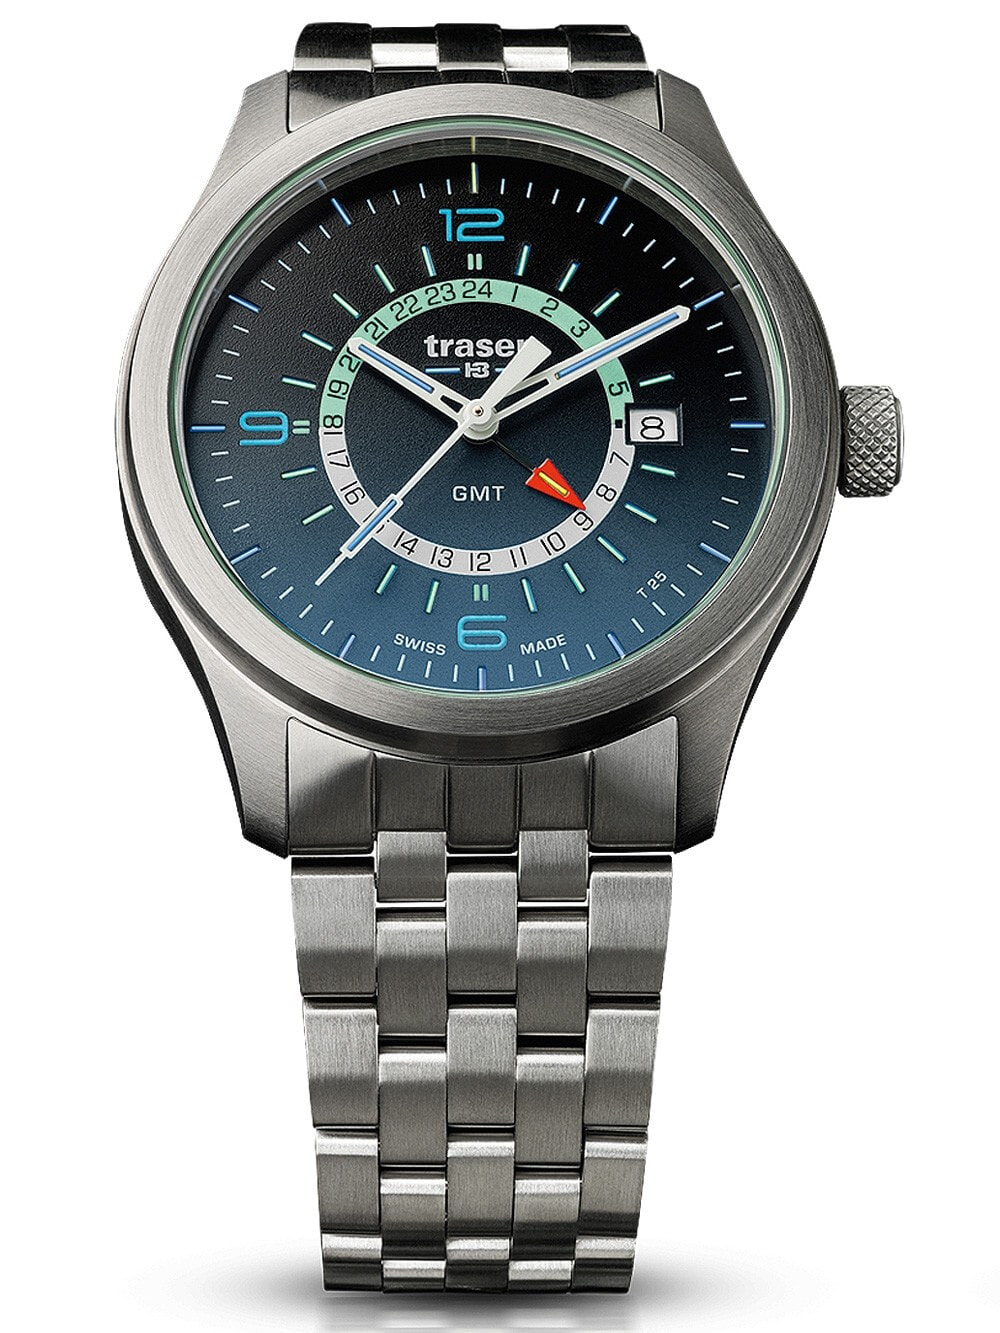 Мужские наручные часы с серебряным браслетом Traser H3 107036 P59 Aurora GMT 42mm 10 ATM